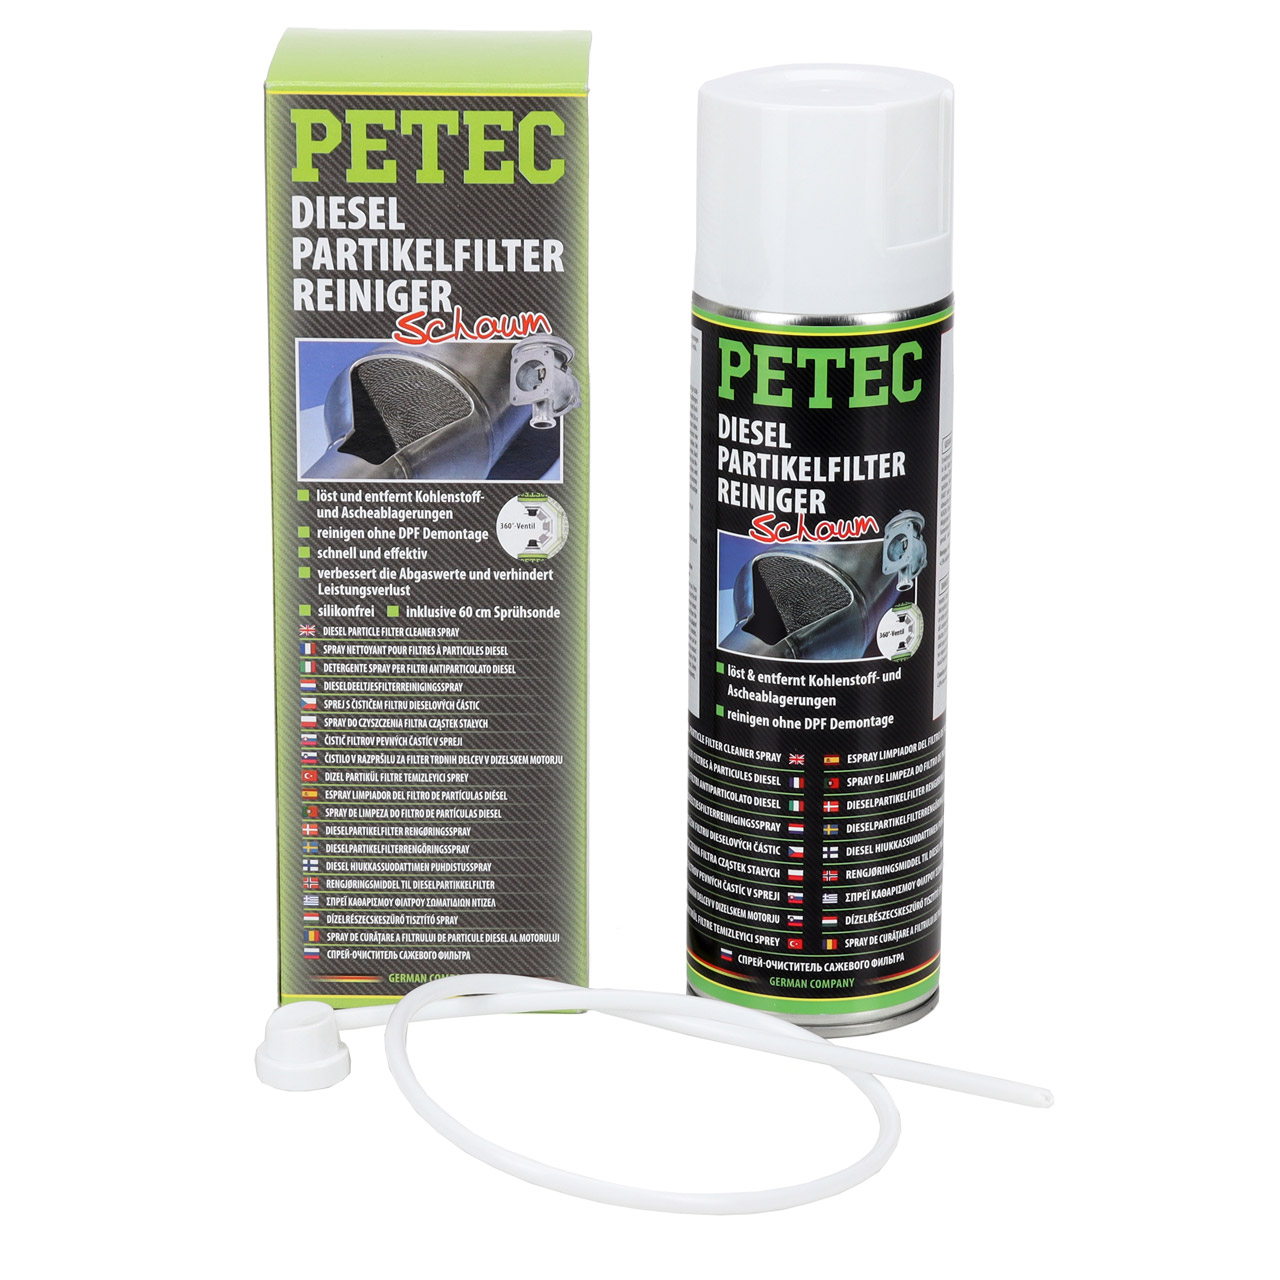 PETEC Dieselpartikelfilter Reiniger - 72550 